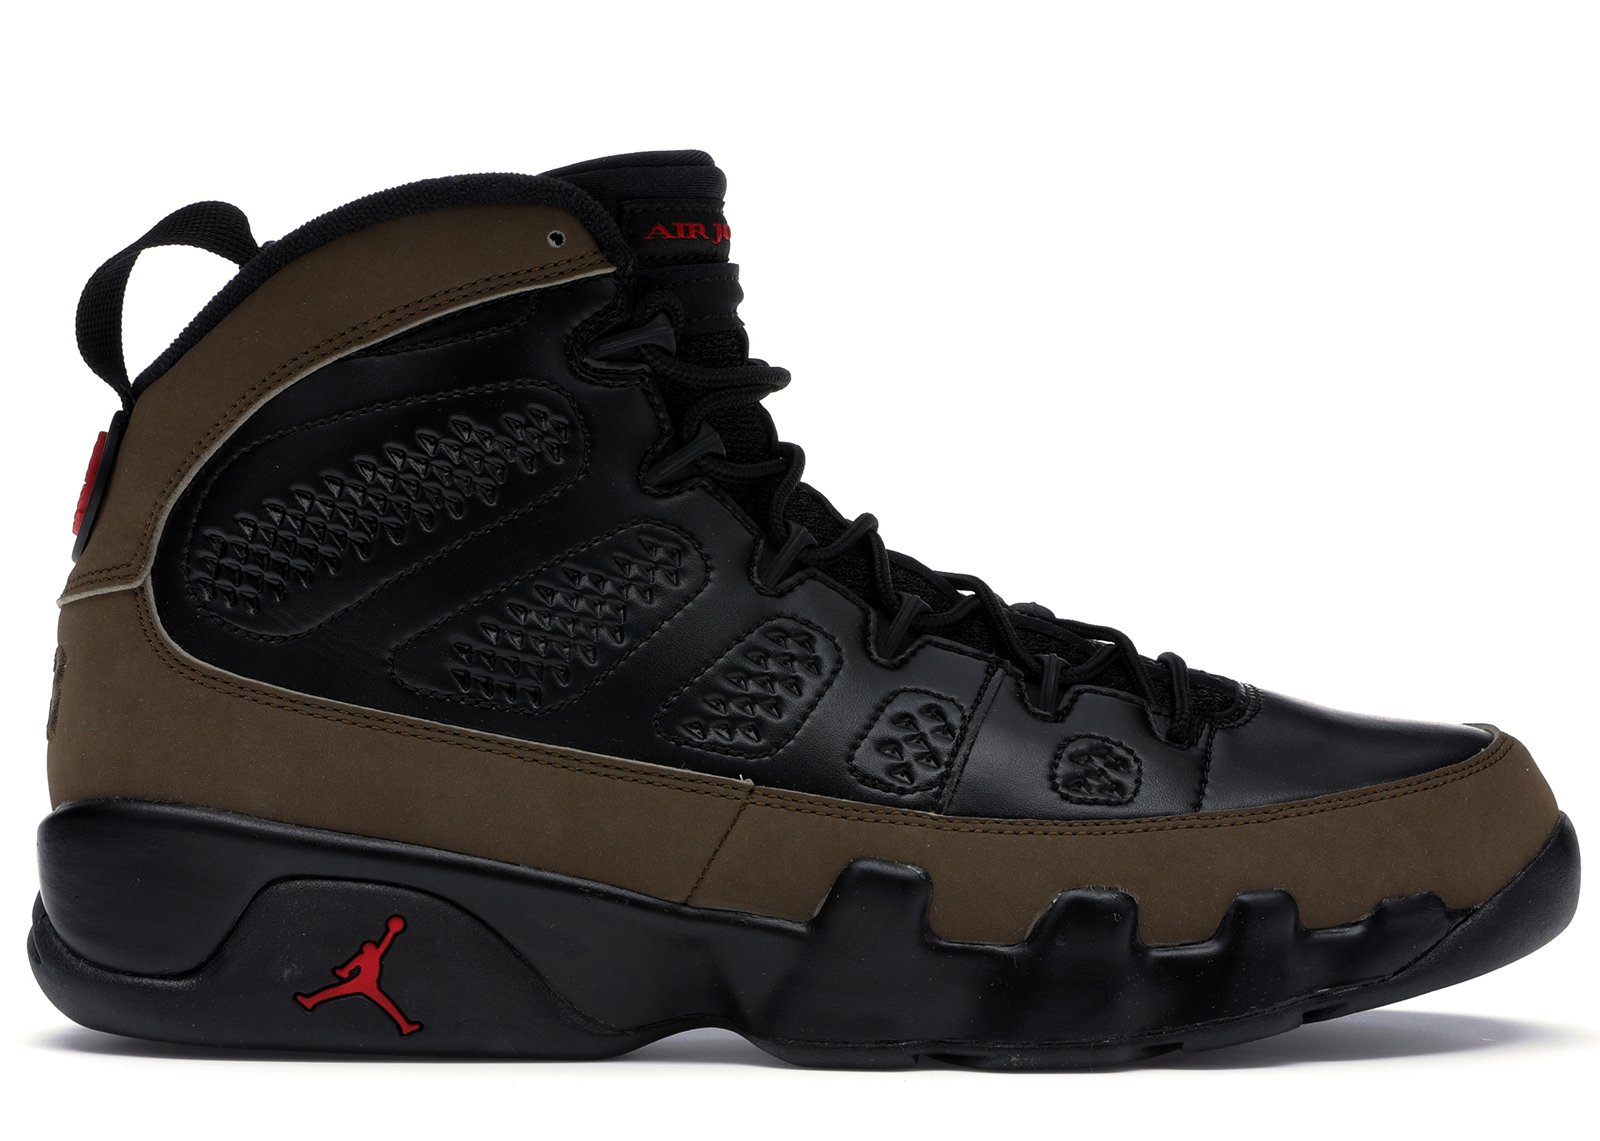 Jordan 9 Retro Olive (2012) sneakers